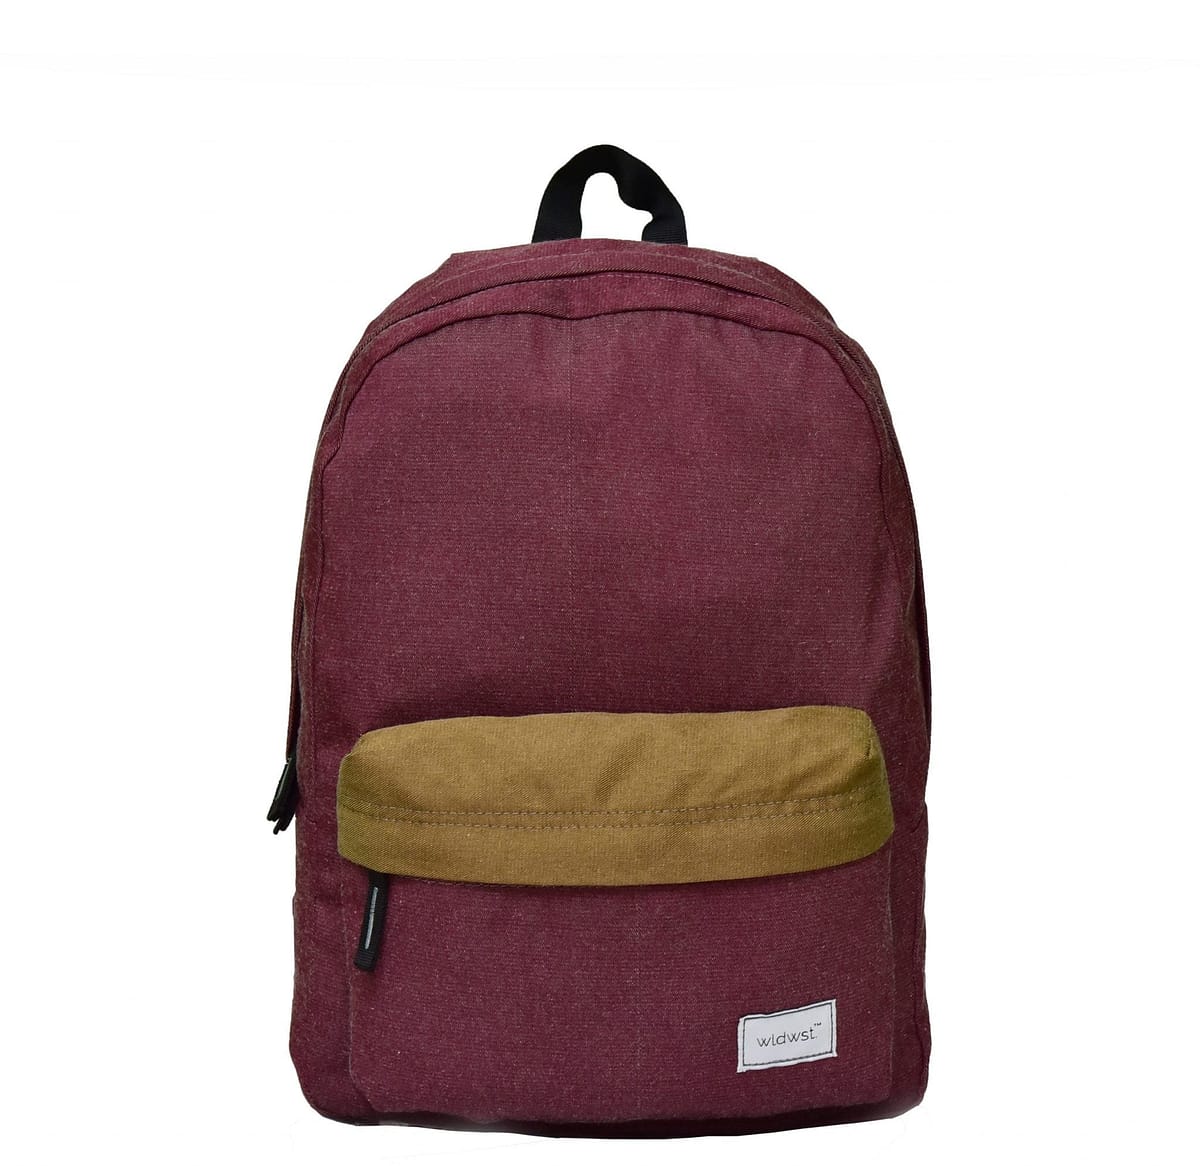 Wildwest Backpack